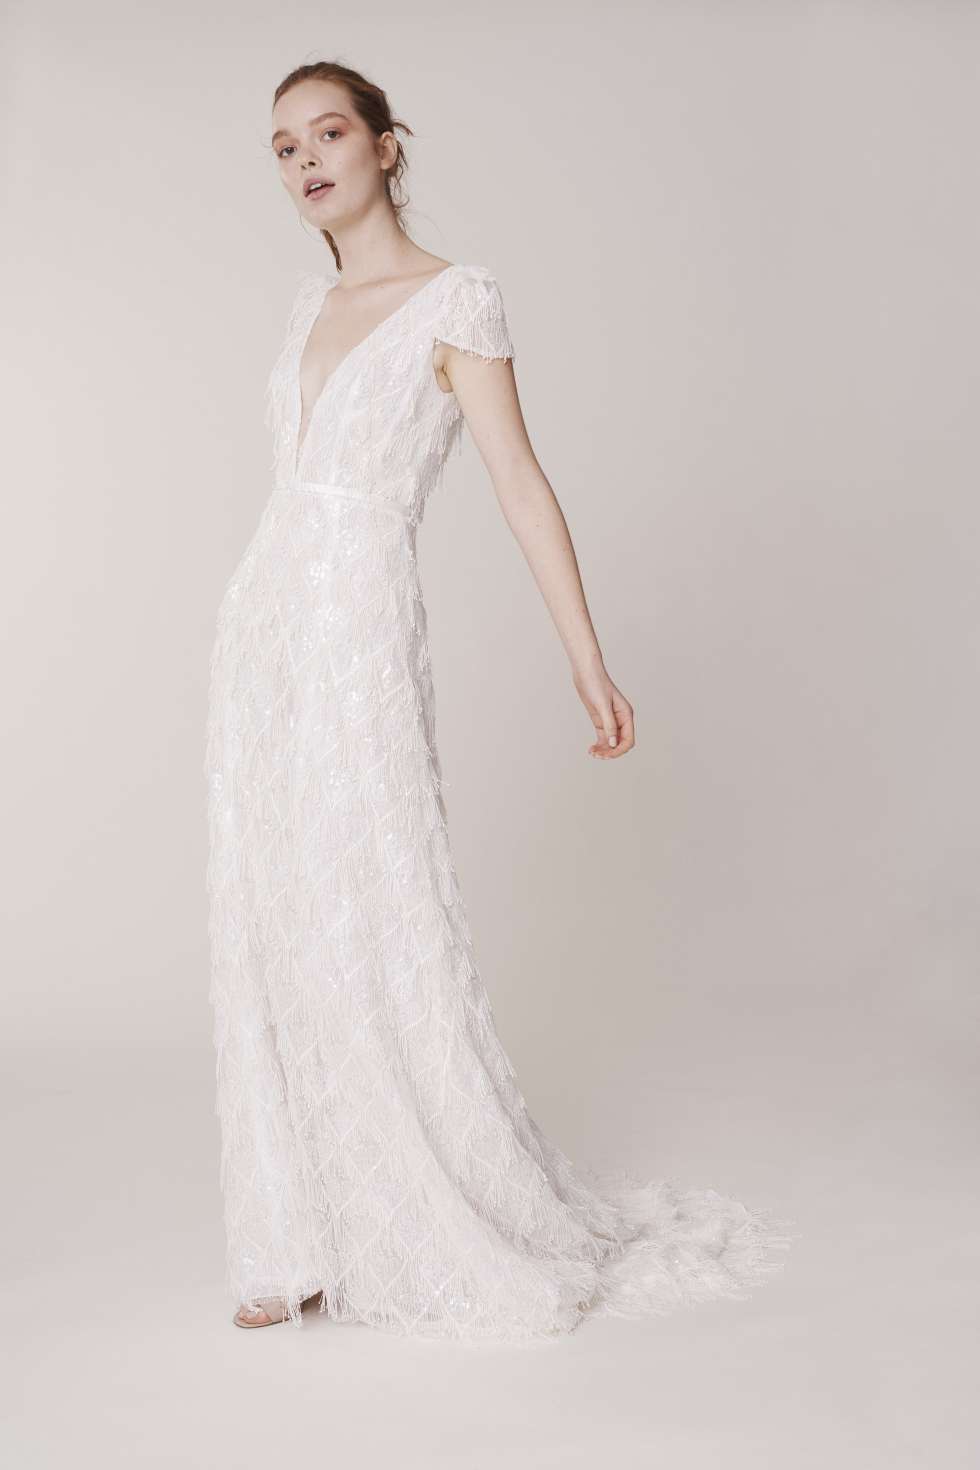 Alyne 2020 Fall Wedding Dresses by Rita Vinieris